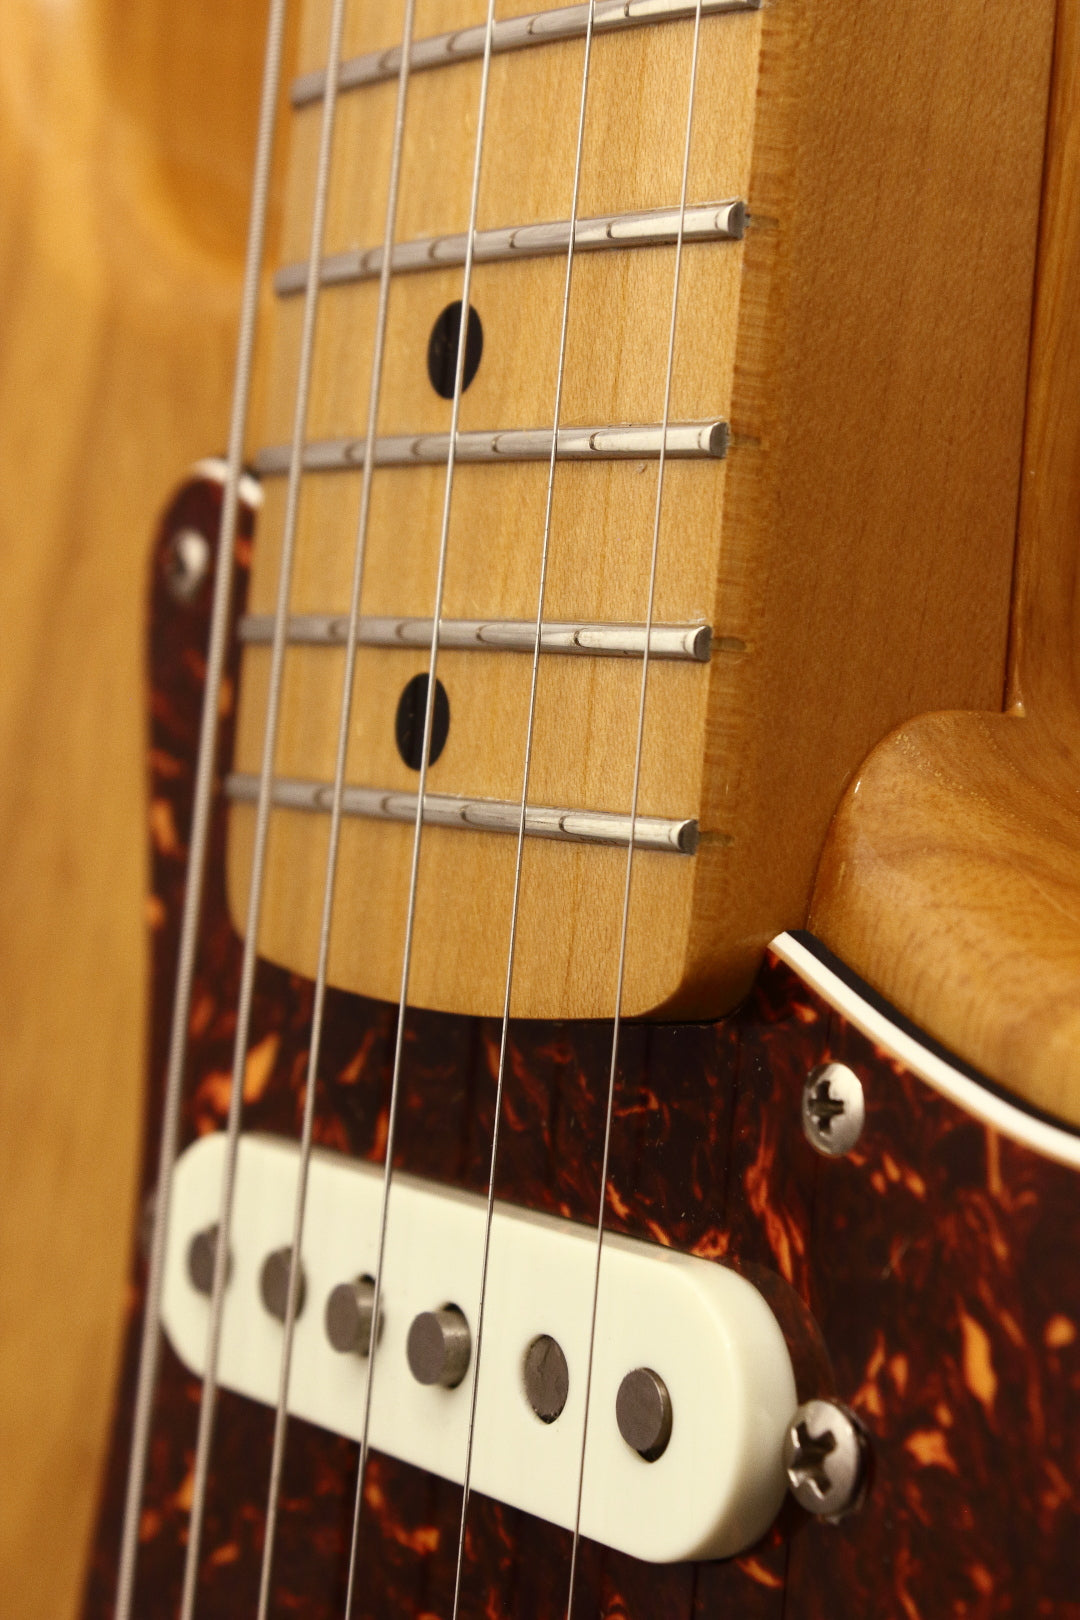 Fender Japan 'Real Vintage' '54 Stratocaster ST54-75RV Natural 1993